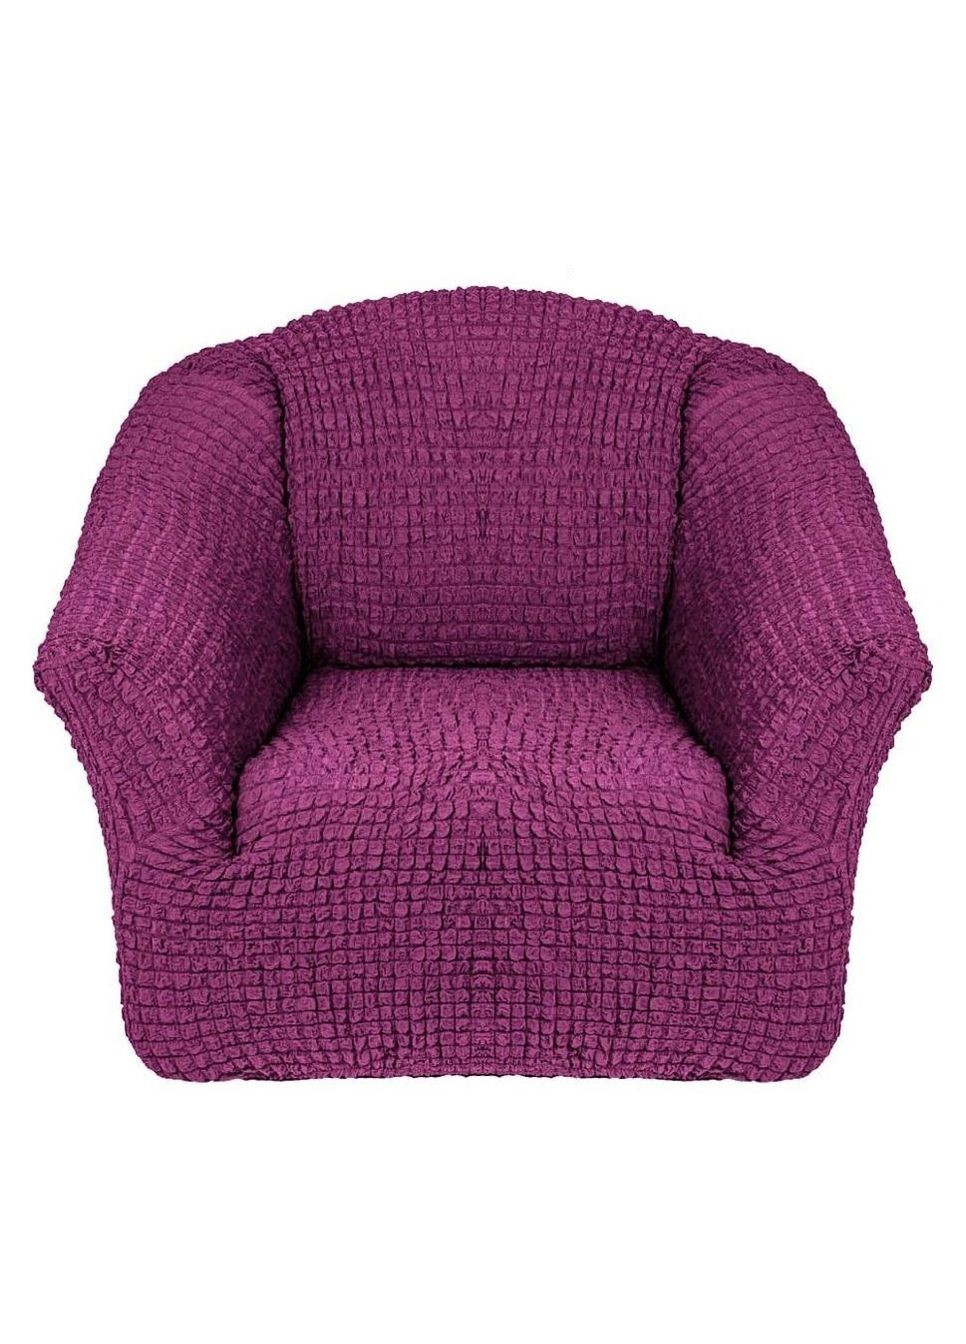 Чехол-накидка без оборки натяжной на кресло concordia комплект 2 шт. (жатка) Фиолетовый Venera (268547743)